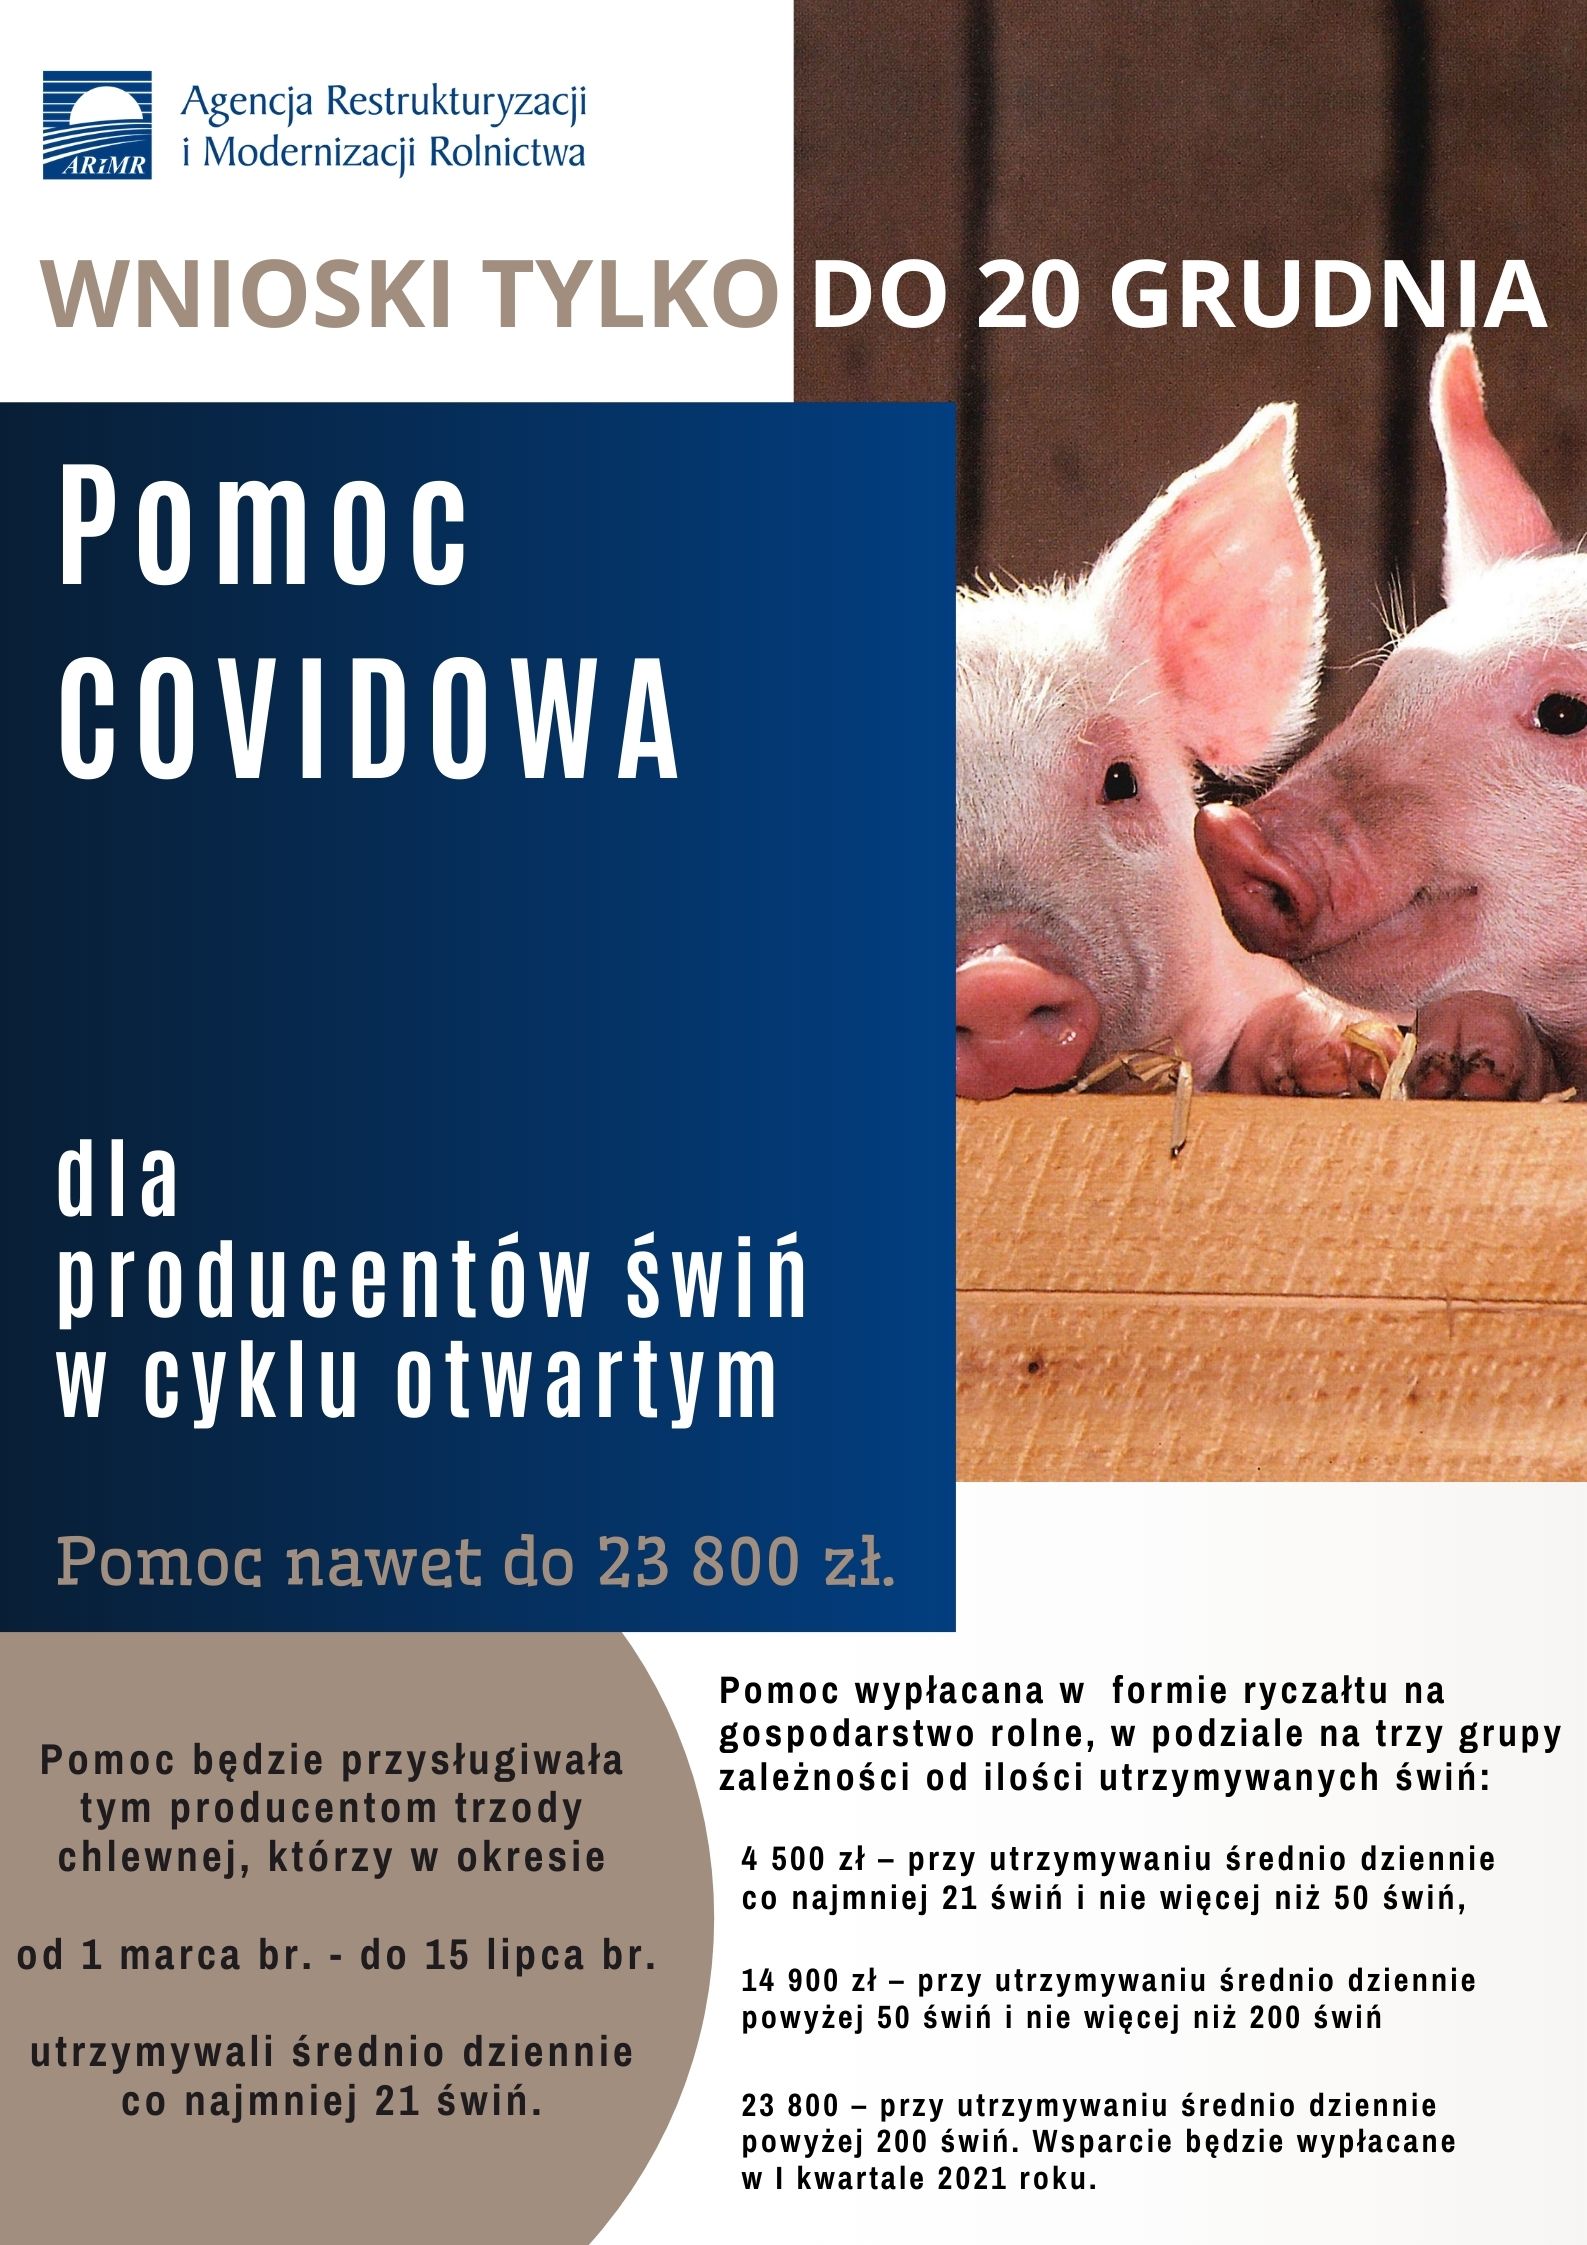 Pomoc Covidowa dla producentów trzody chlewnej 